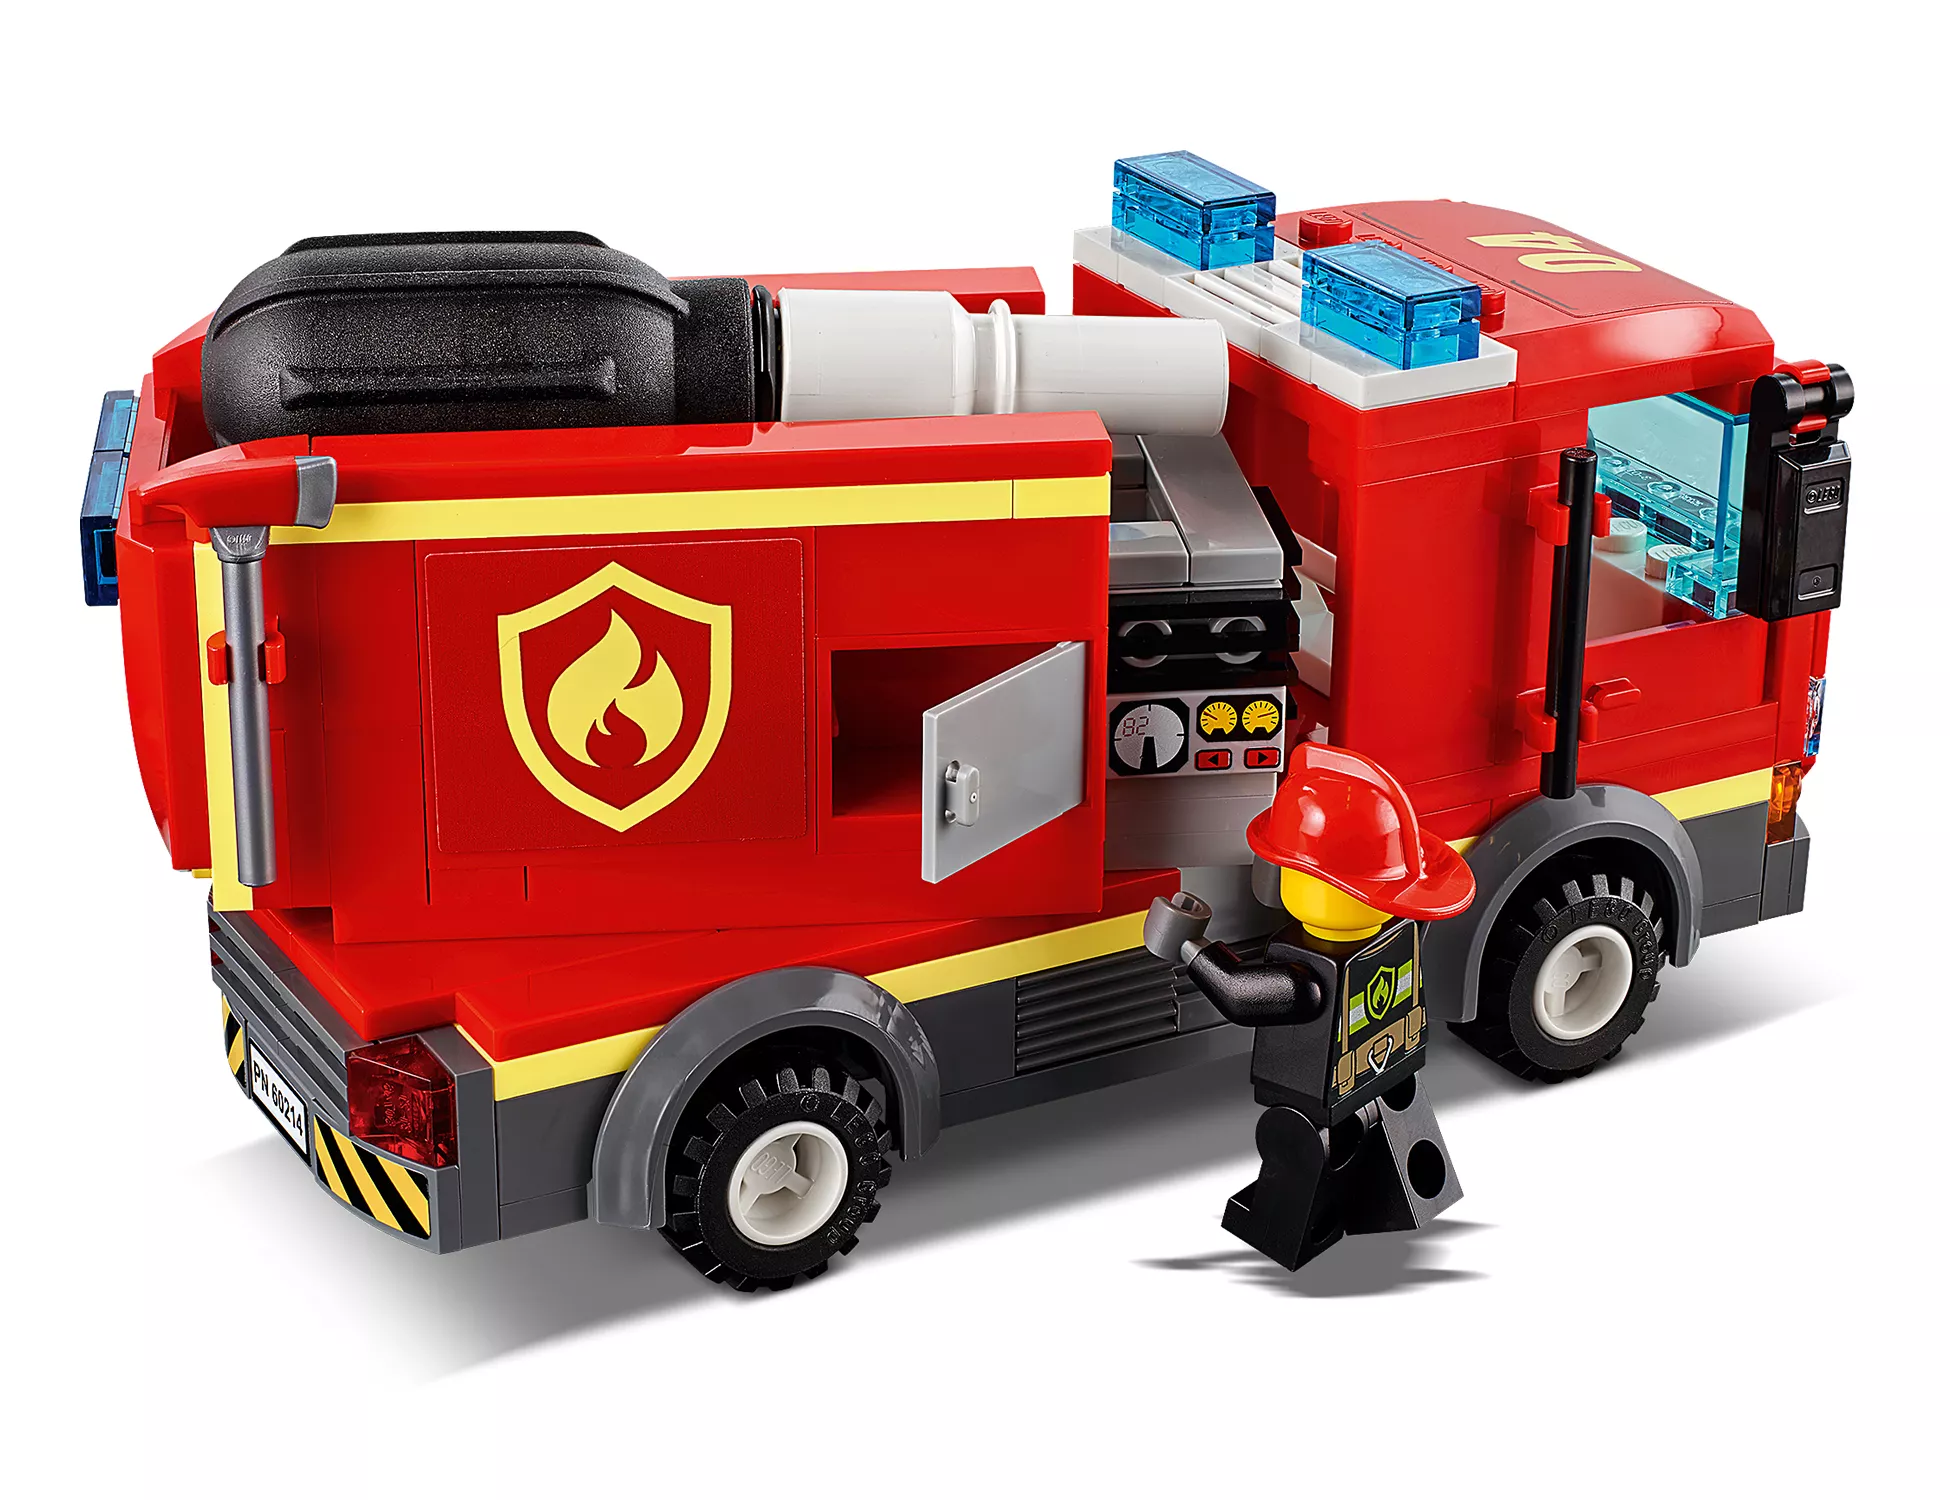 LEGO City Feuerwehreinsatz im Burger-Restaurant